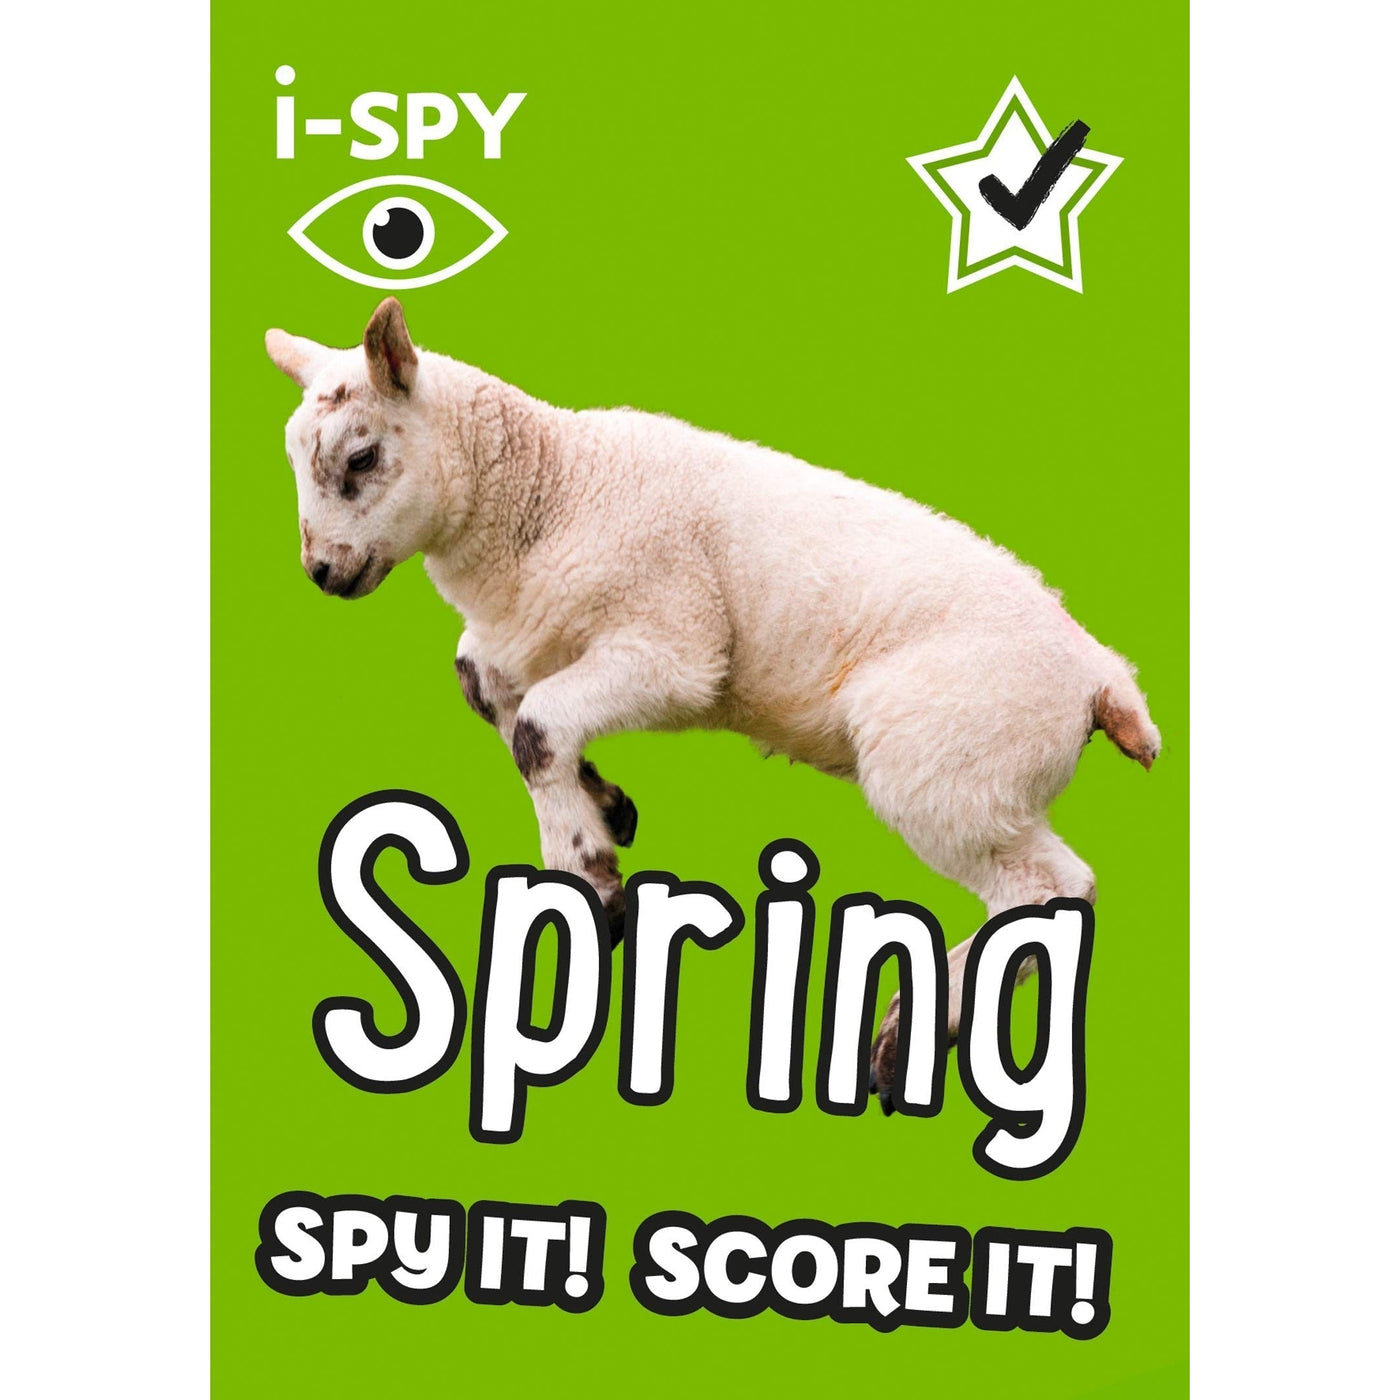 I-Spy Spring: Spy It! Score It! (Collins Michelin I-Spy Guides)